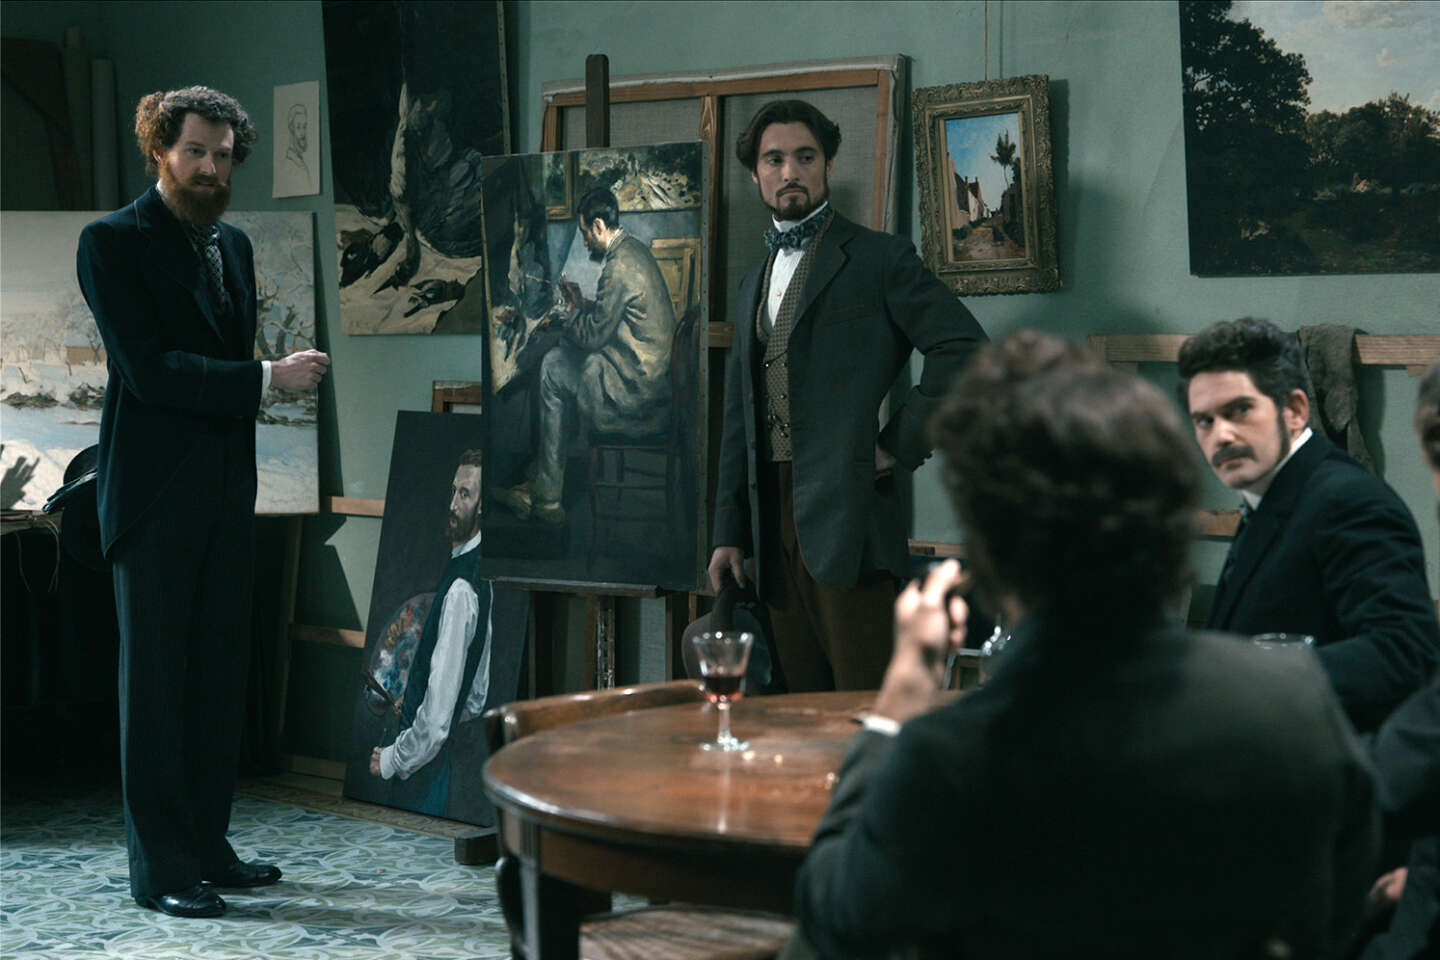 Regarder la vidéo « 1874. La naissance de l’impressionnisme », sur Arte : retour sur l’exposition qui révolutionna la peinture